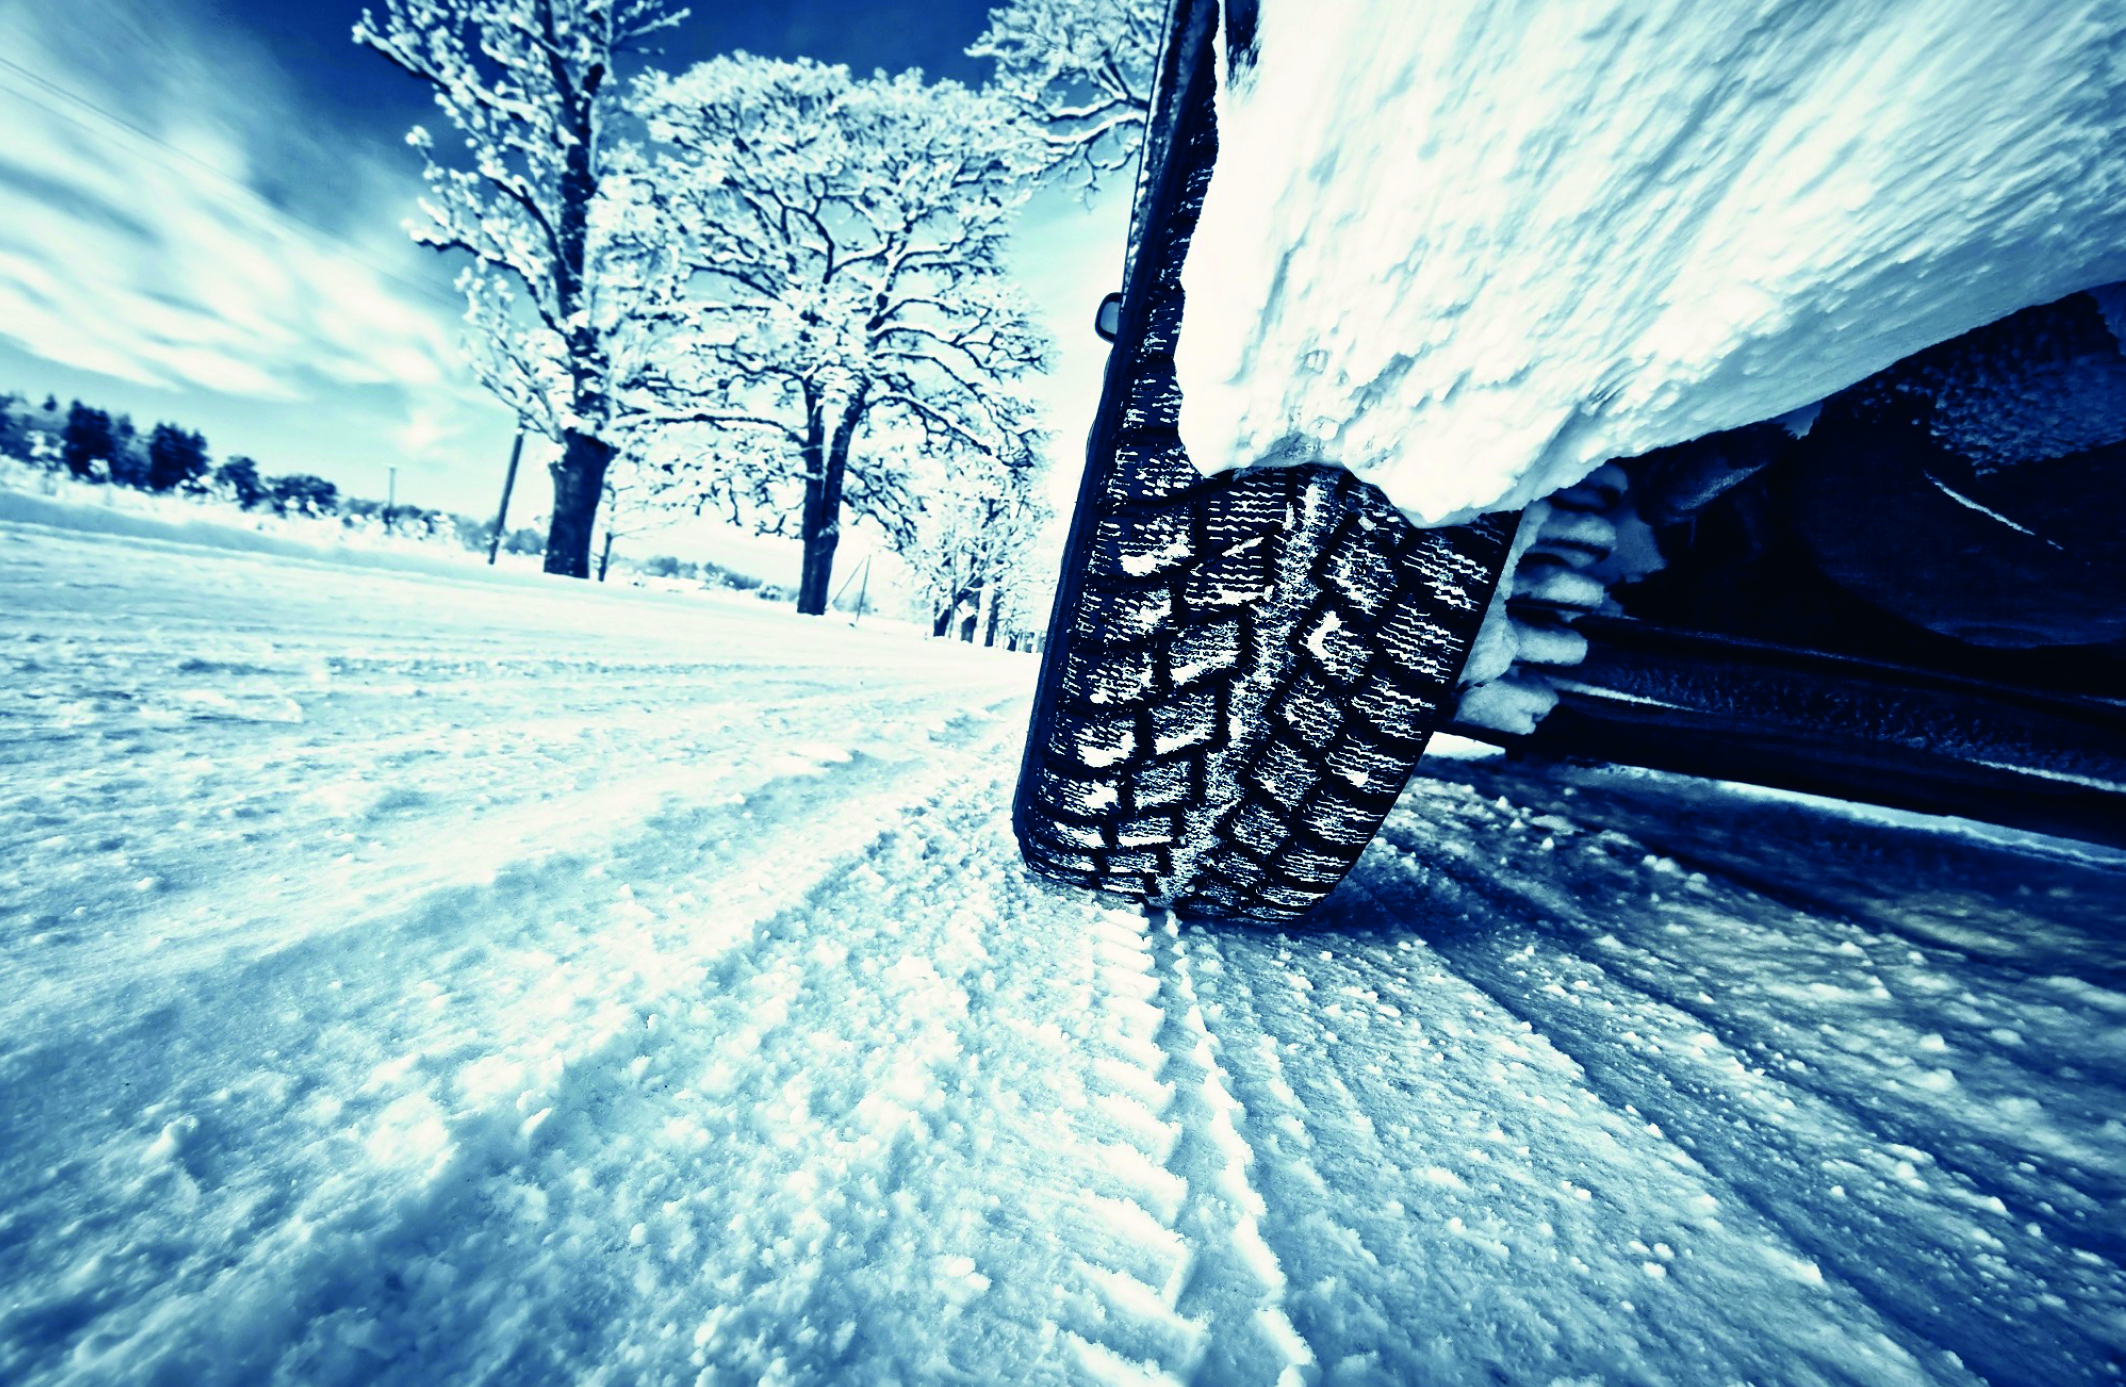 Nahaufnahme eines Mietwagen mit Winterreifen auf schneebedeckter Fahrbahn (Winterreisen).